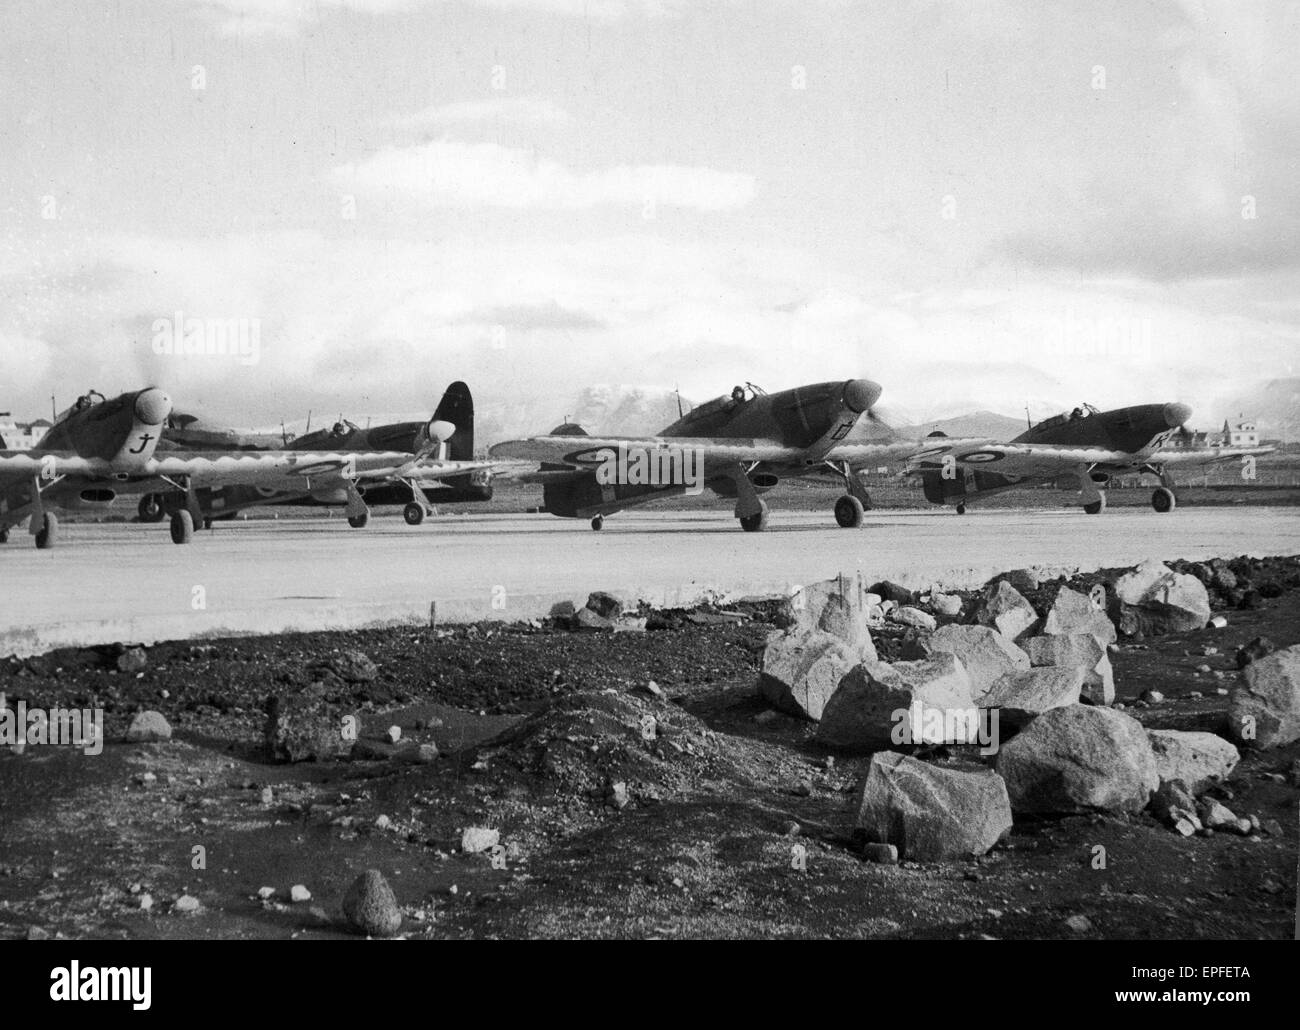 Serie zeigen Phasen der Aktivitäten der RAF in Island, wichtigsten Außenposten ihrer Bemühungen in der Schlacht des Atlantiks, in dem britische Kampfflugzeuge eine wichtige Rolle spielen.  Bild zeigt eine Linie von Hurrikanen etwa abzunehmen. Dezember 1941 Stockfoto